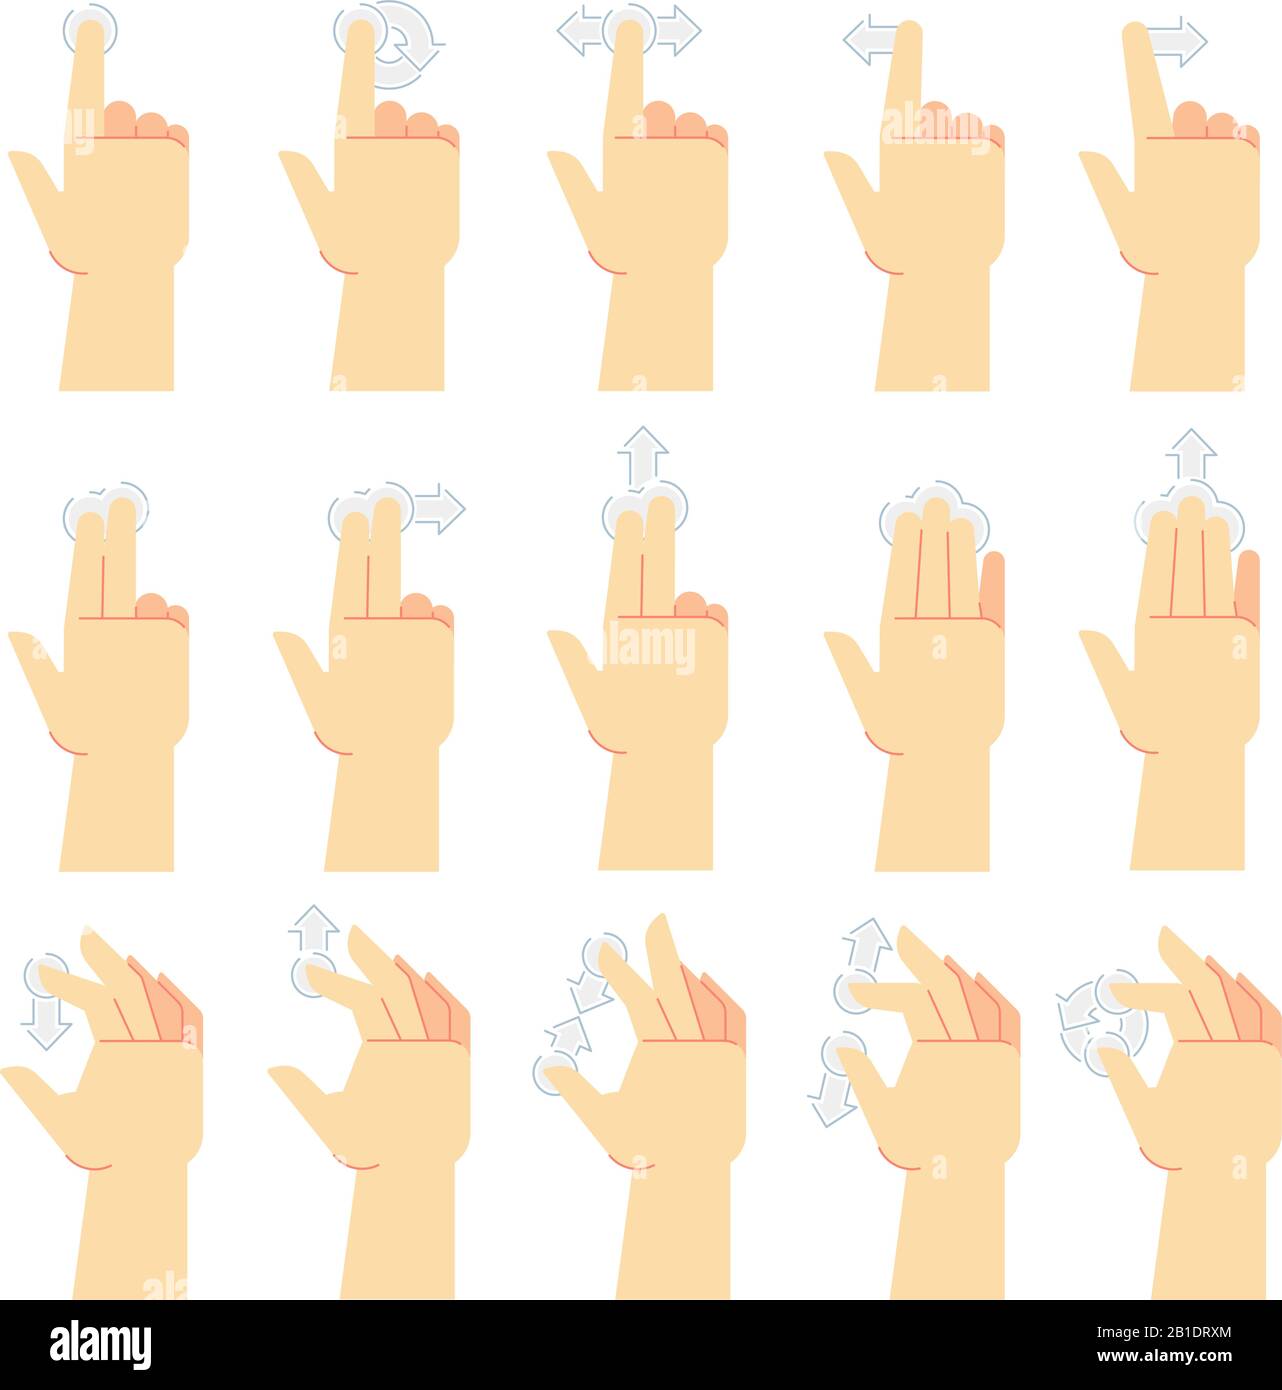 Touchscreen-Gesten. Tippen Sie mit dem Finger, wischen Sie mit der Geste und der Hand über die Smartphone-Bildschirme. Tippen Sie auf UI Cartoon Vector Icons Set Stock Vektor